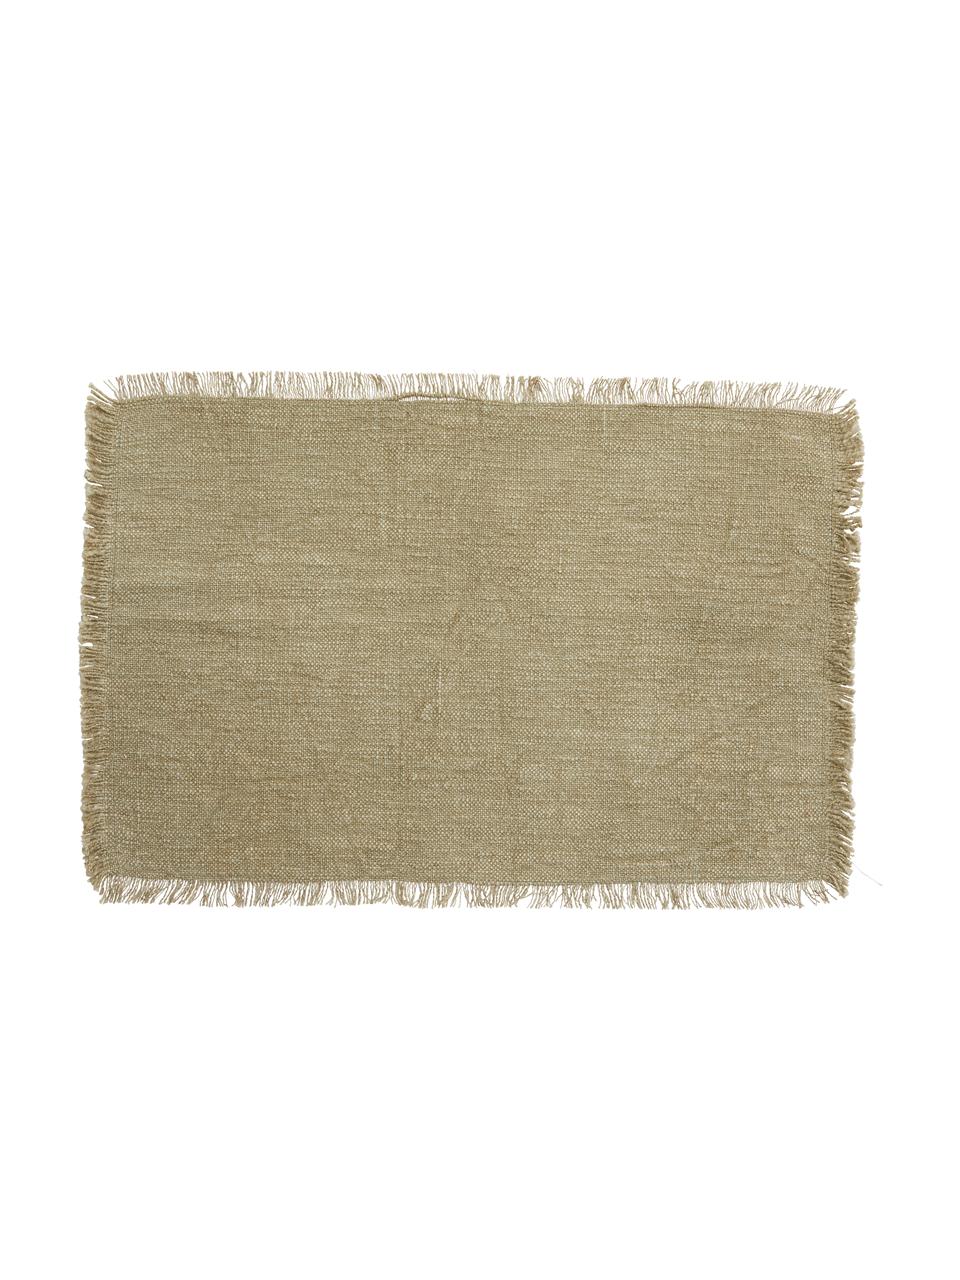 Podkładka z bawełny z frędzlami Atria, 2 szt., 100% bawełna, Zielonobrązowy, S 33 x D 48 cm